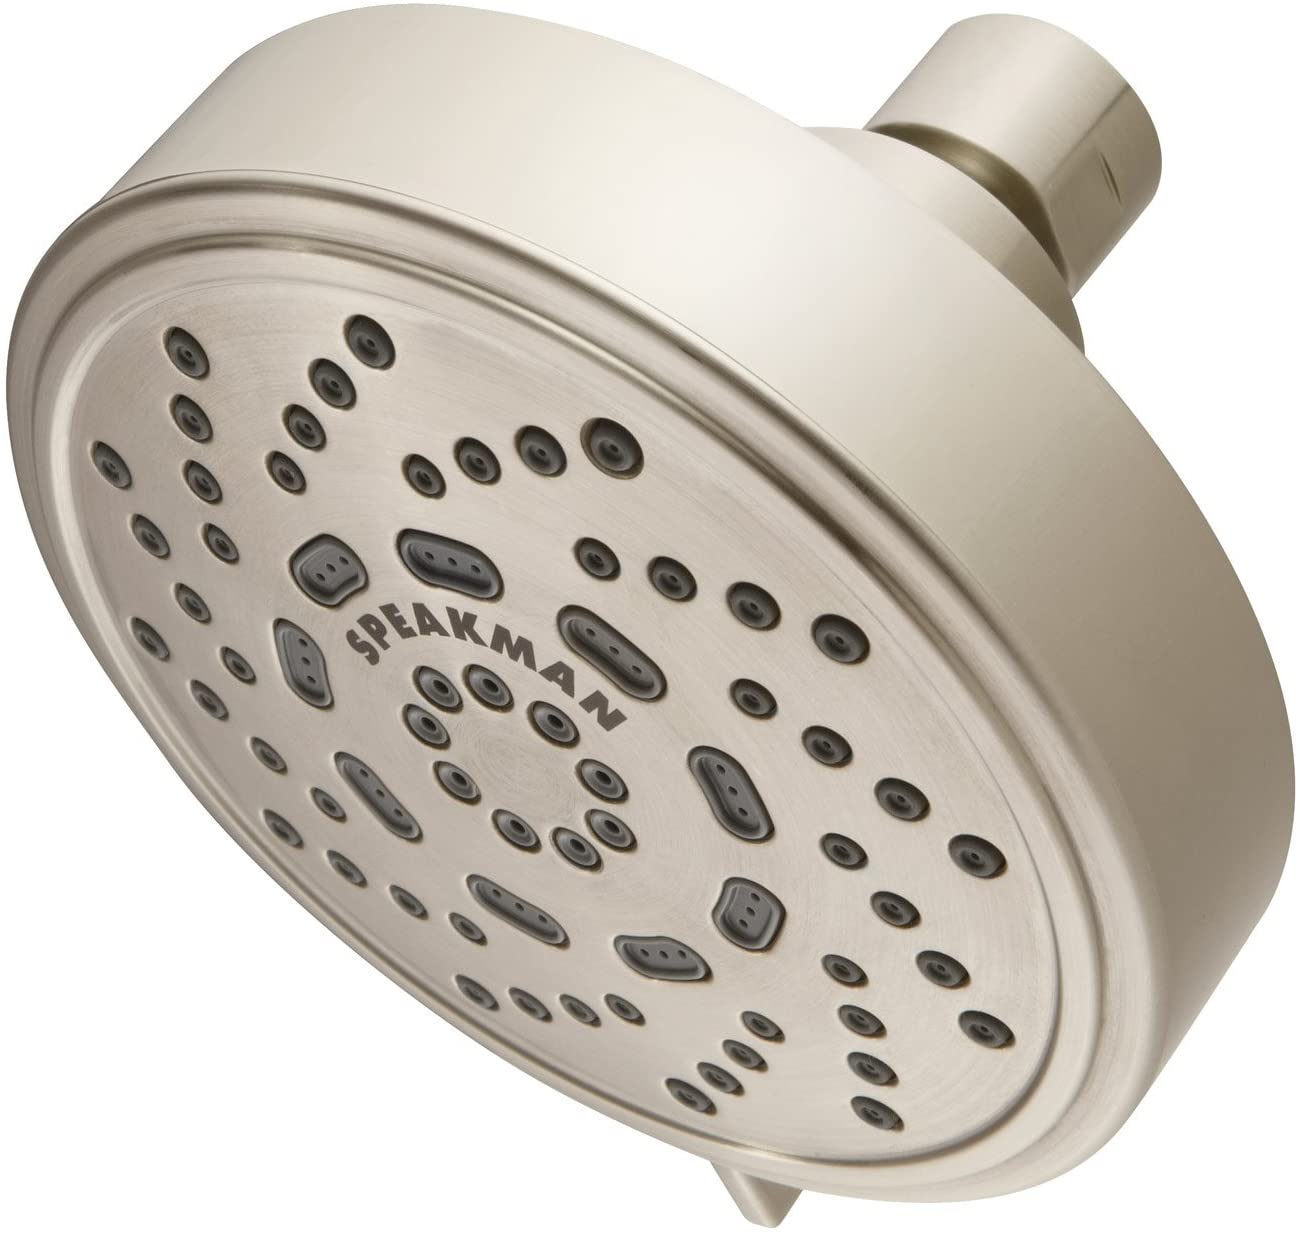 Speakman S-4200-BN-E15 1.5 GPM Shower Head